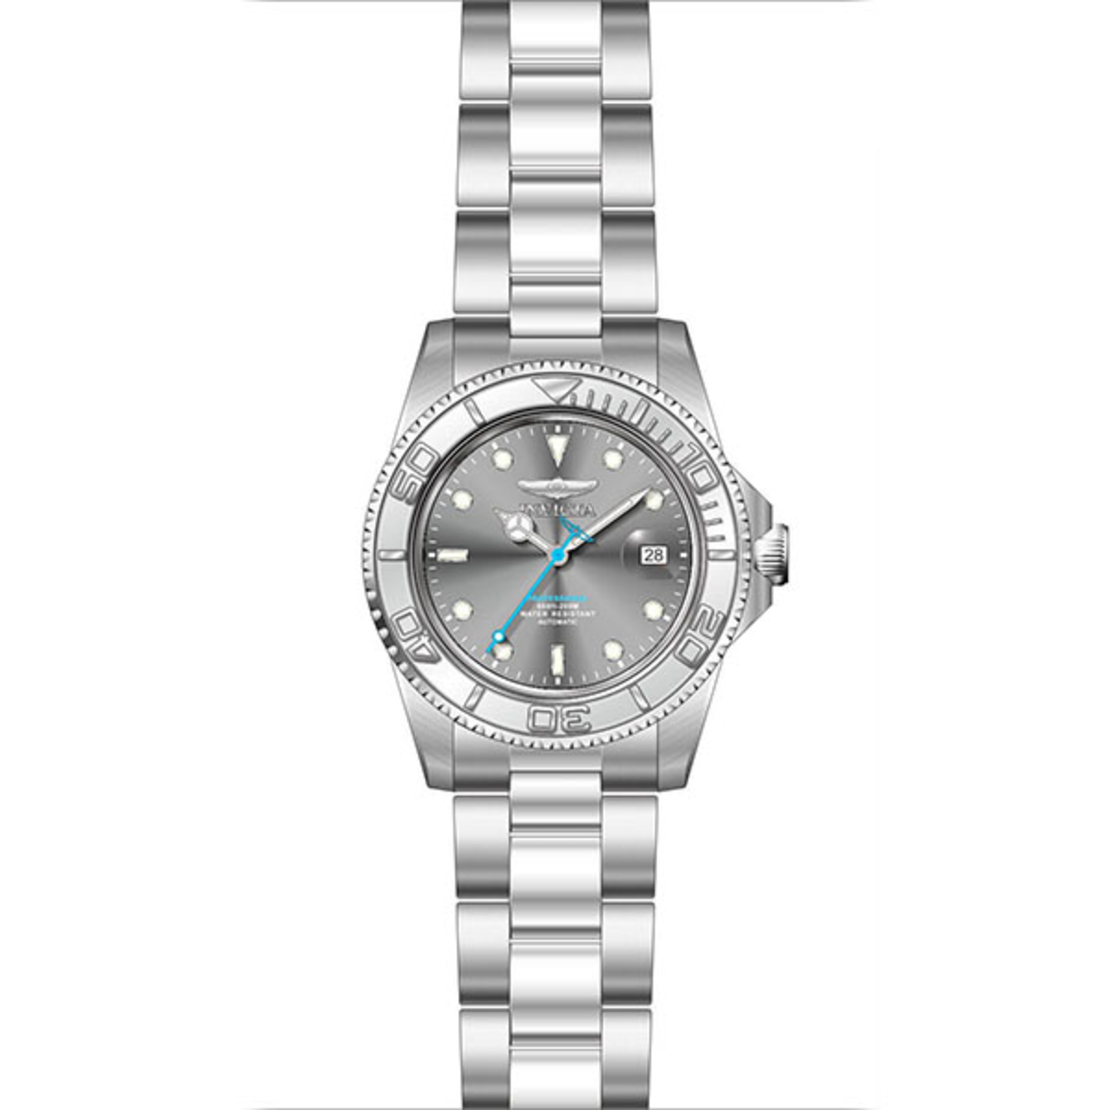 Мужские часы Invicta Pro Diver, модель 36748